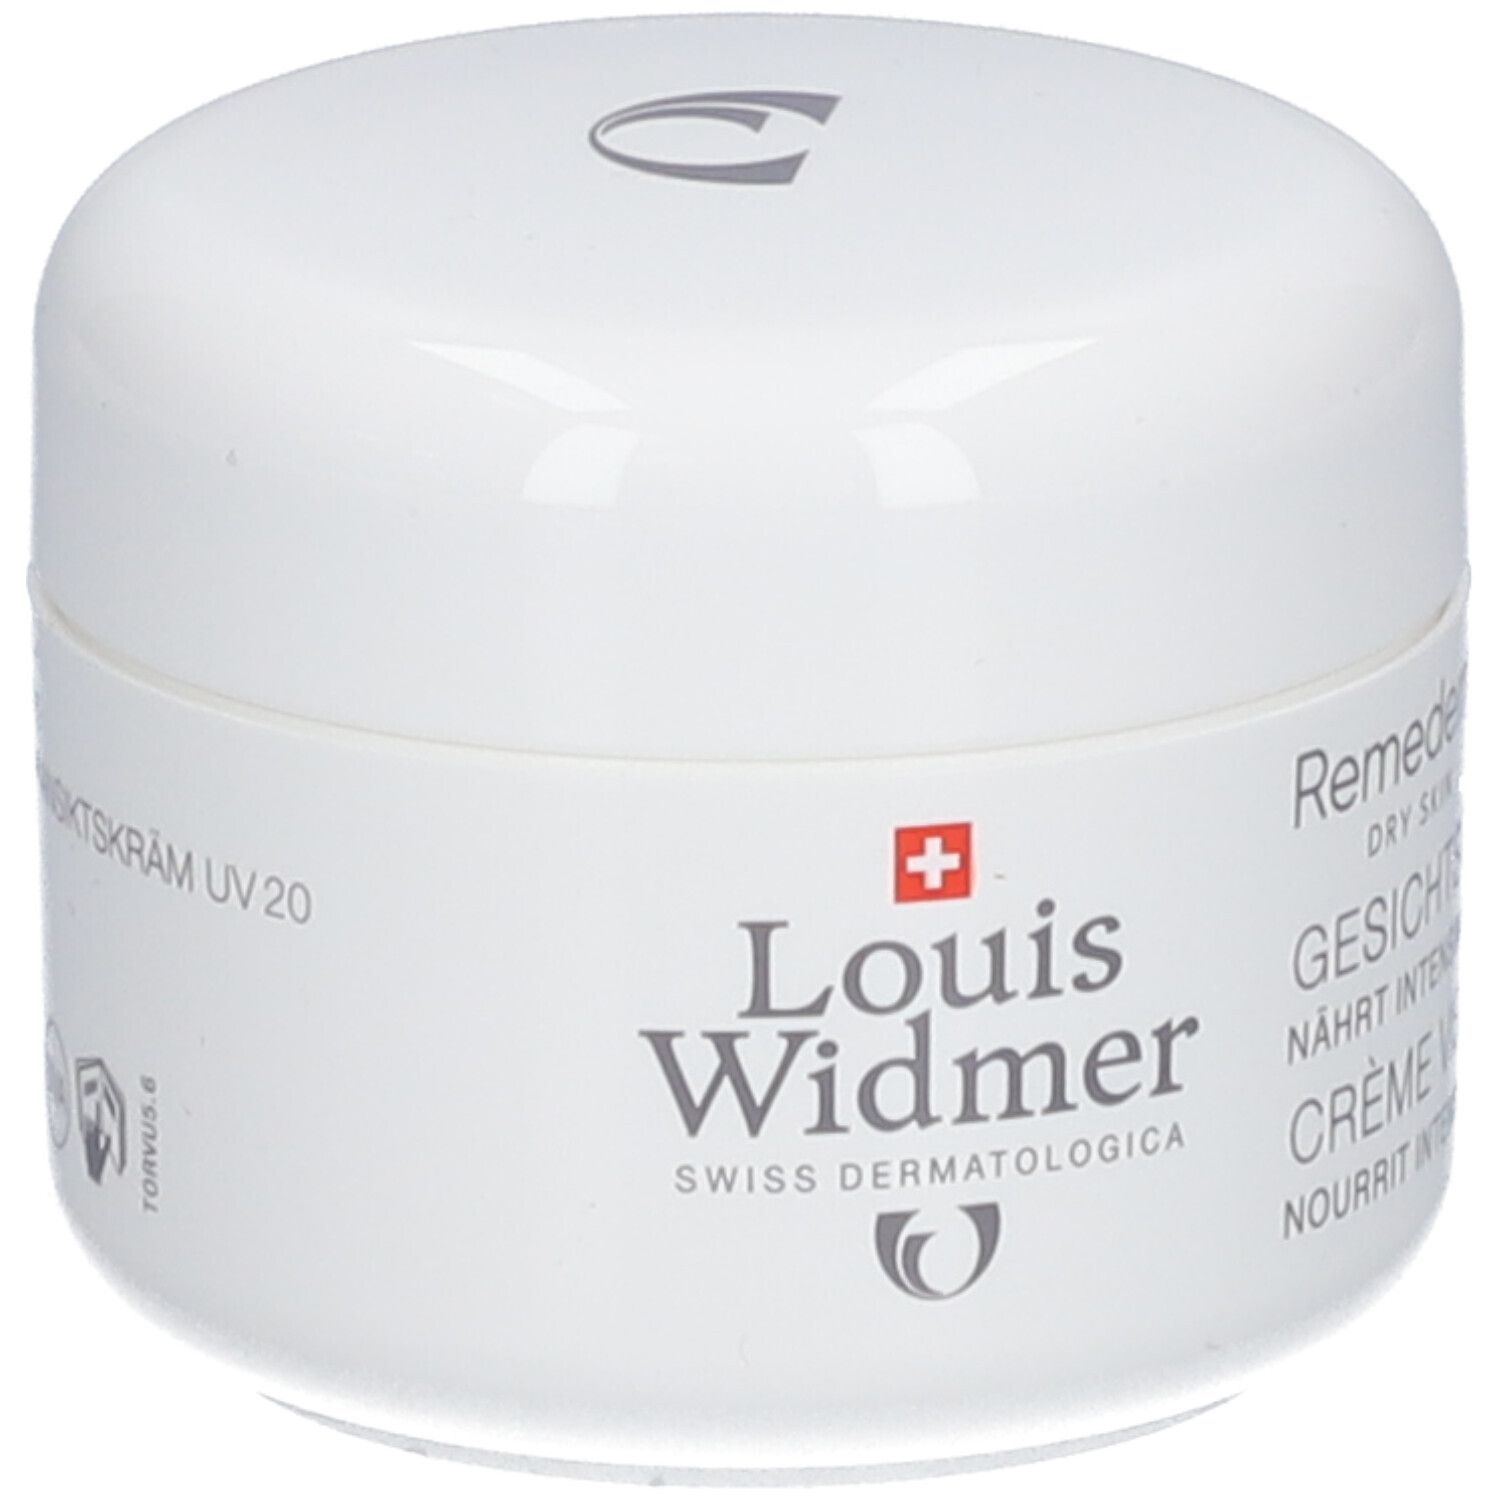 Louis Widmer Remederm Gesichtscreme UV 20 unparfümiert